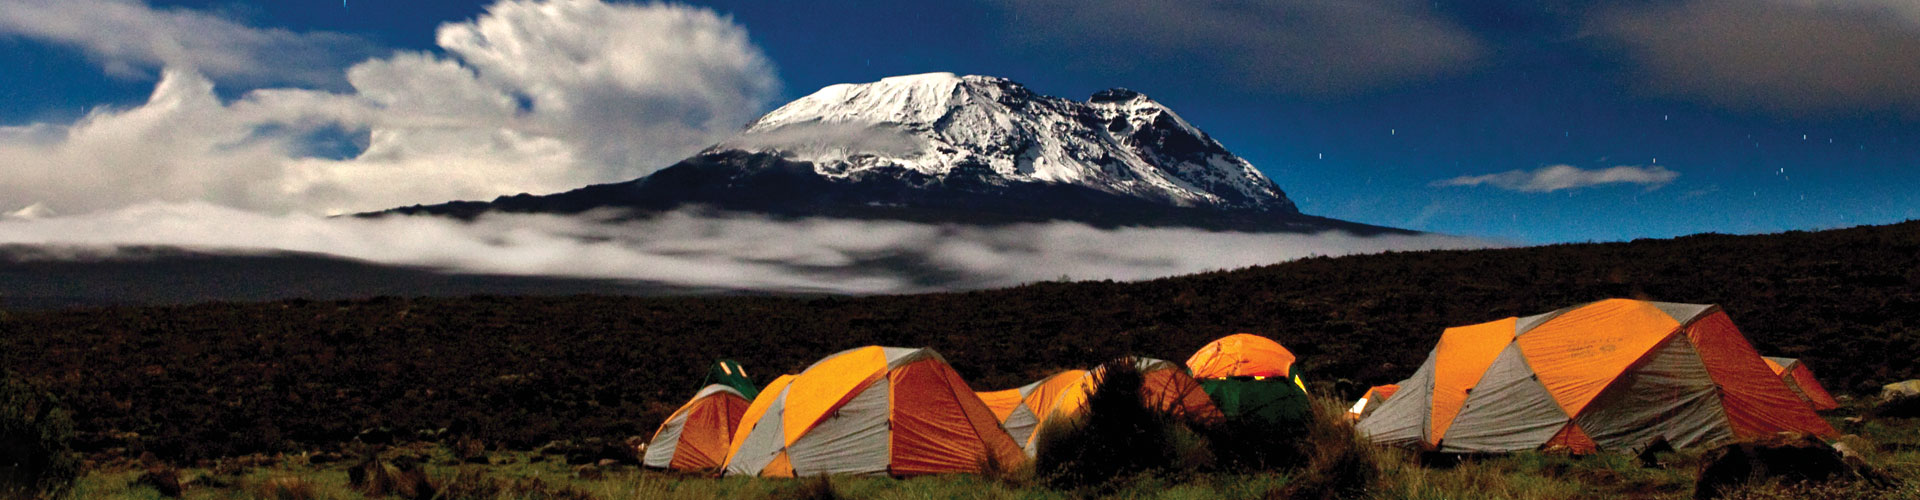 Camps at the base of Kilimanjaro